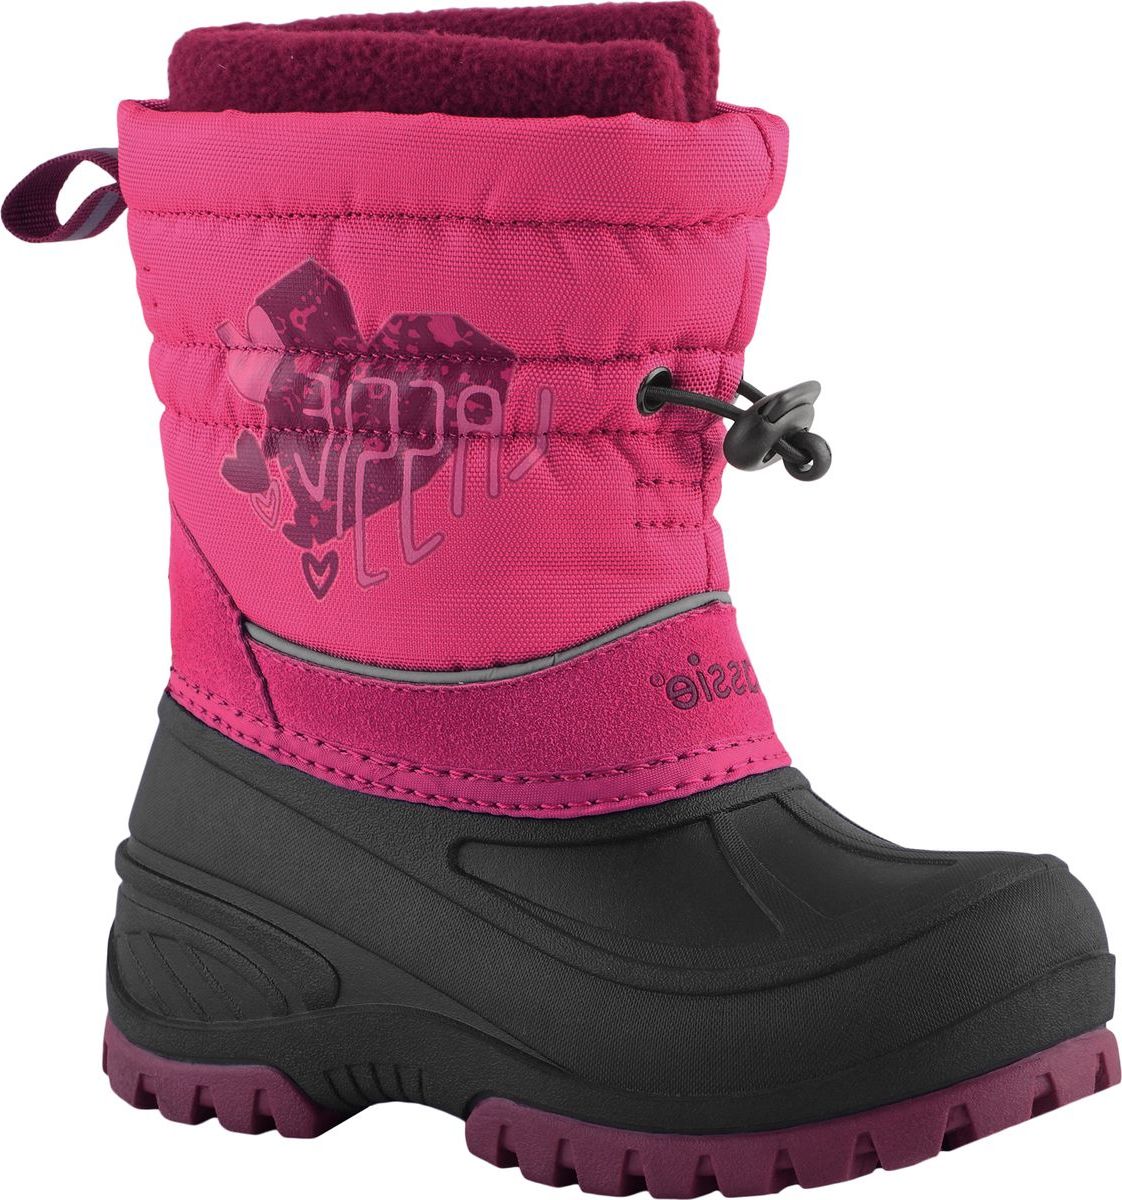 Ботинки детские Lassie Coldwell, цвет: розовый. 7691214690. Размер 24